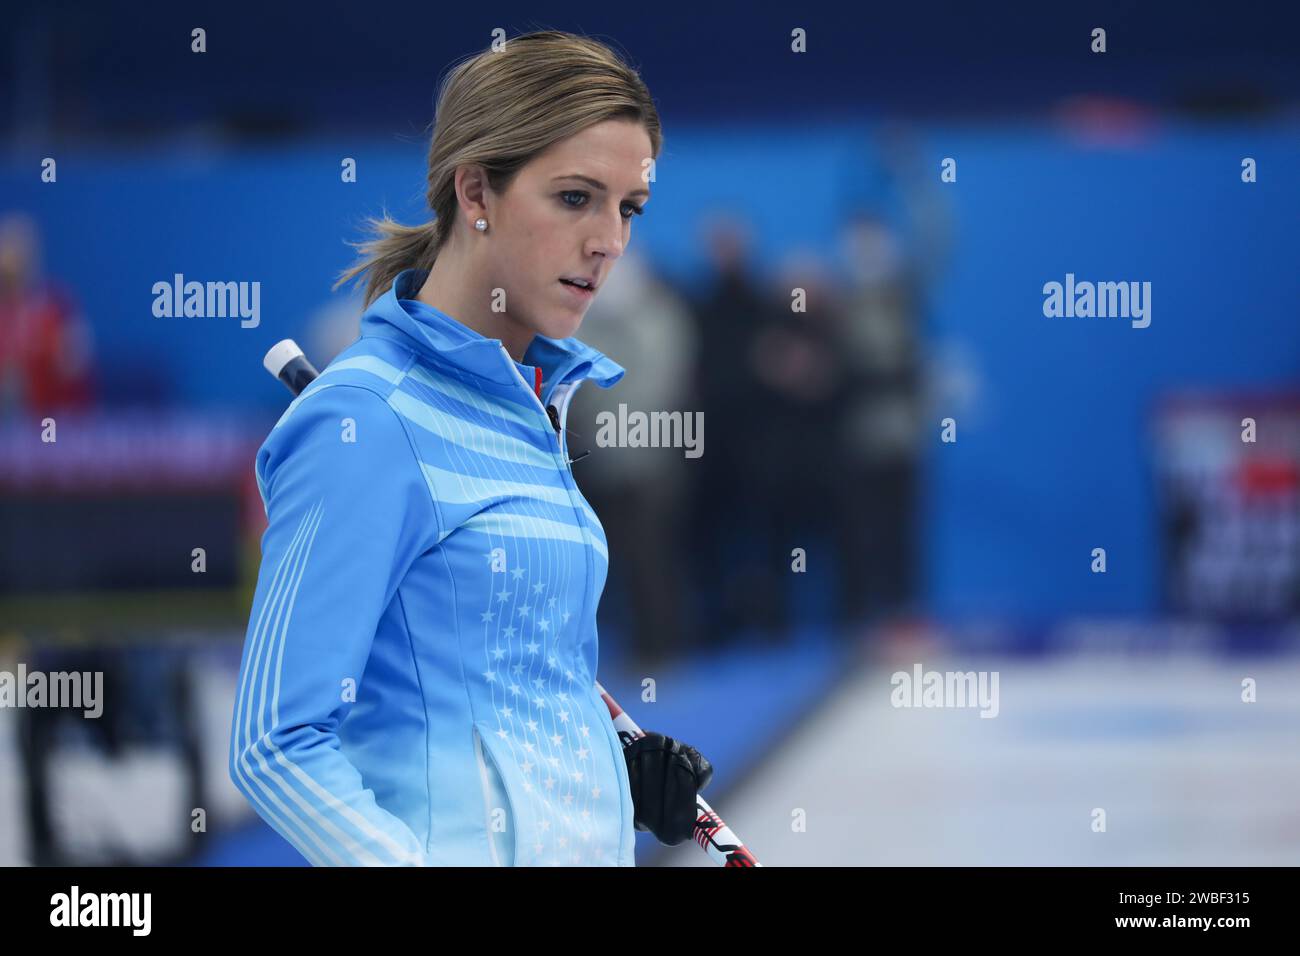 5 FÉVRIER 2022 - Pékin, Chine : Vicky Persinger de l'équipe des États-Unis d'Amérique dans la session Round Robin 8 des doubles mixtes de curling au Beijin Banque D'Images